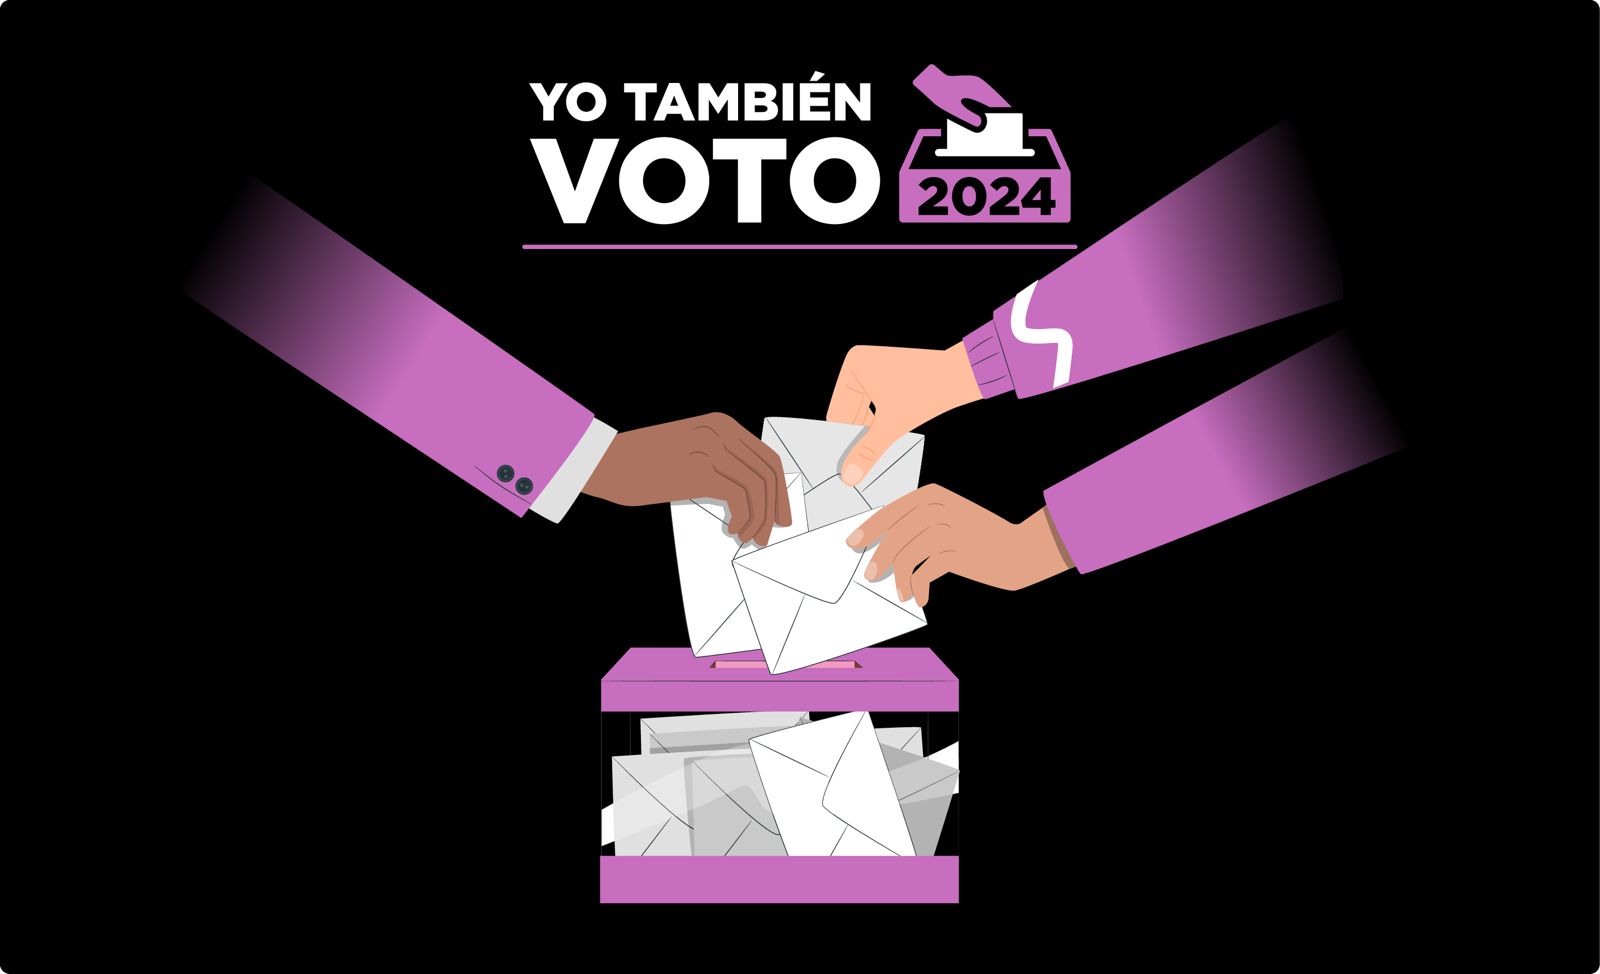 Gráfico de Yo También Voto 2024 y una urna electoral con tres manos emitiendo su voto